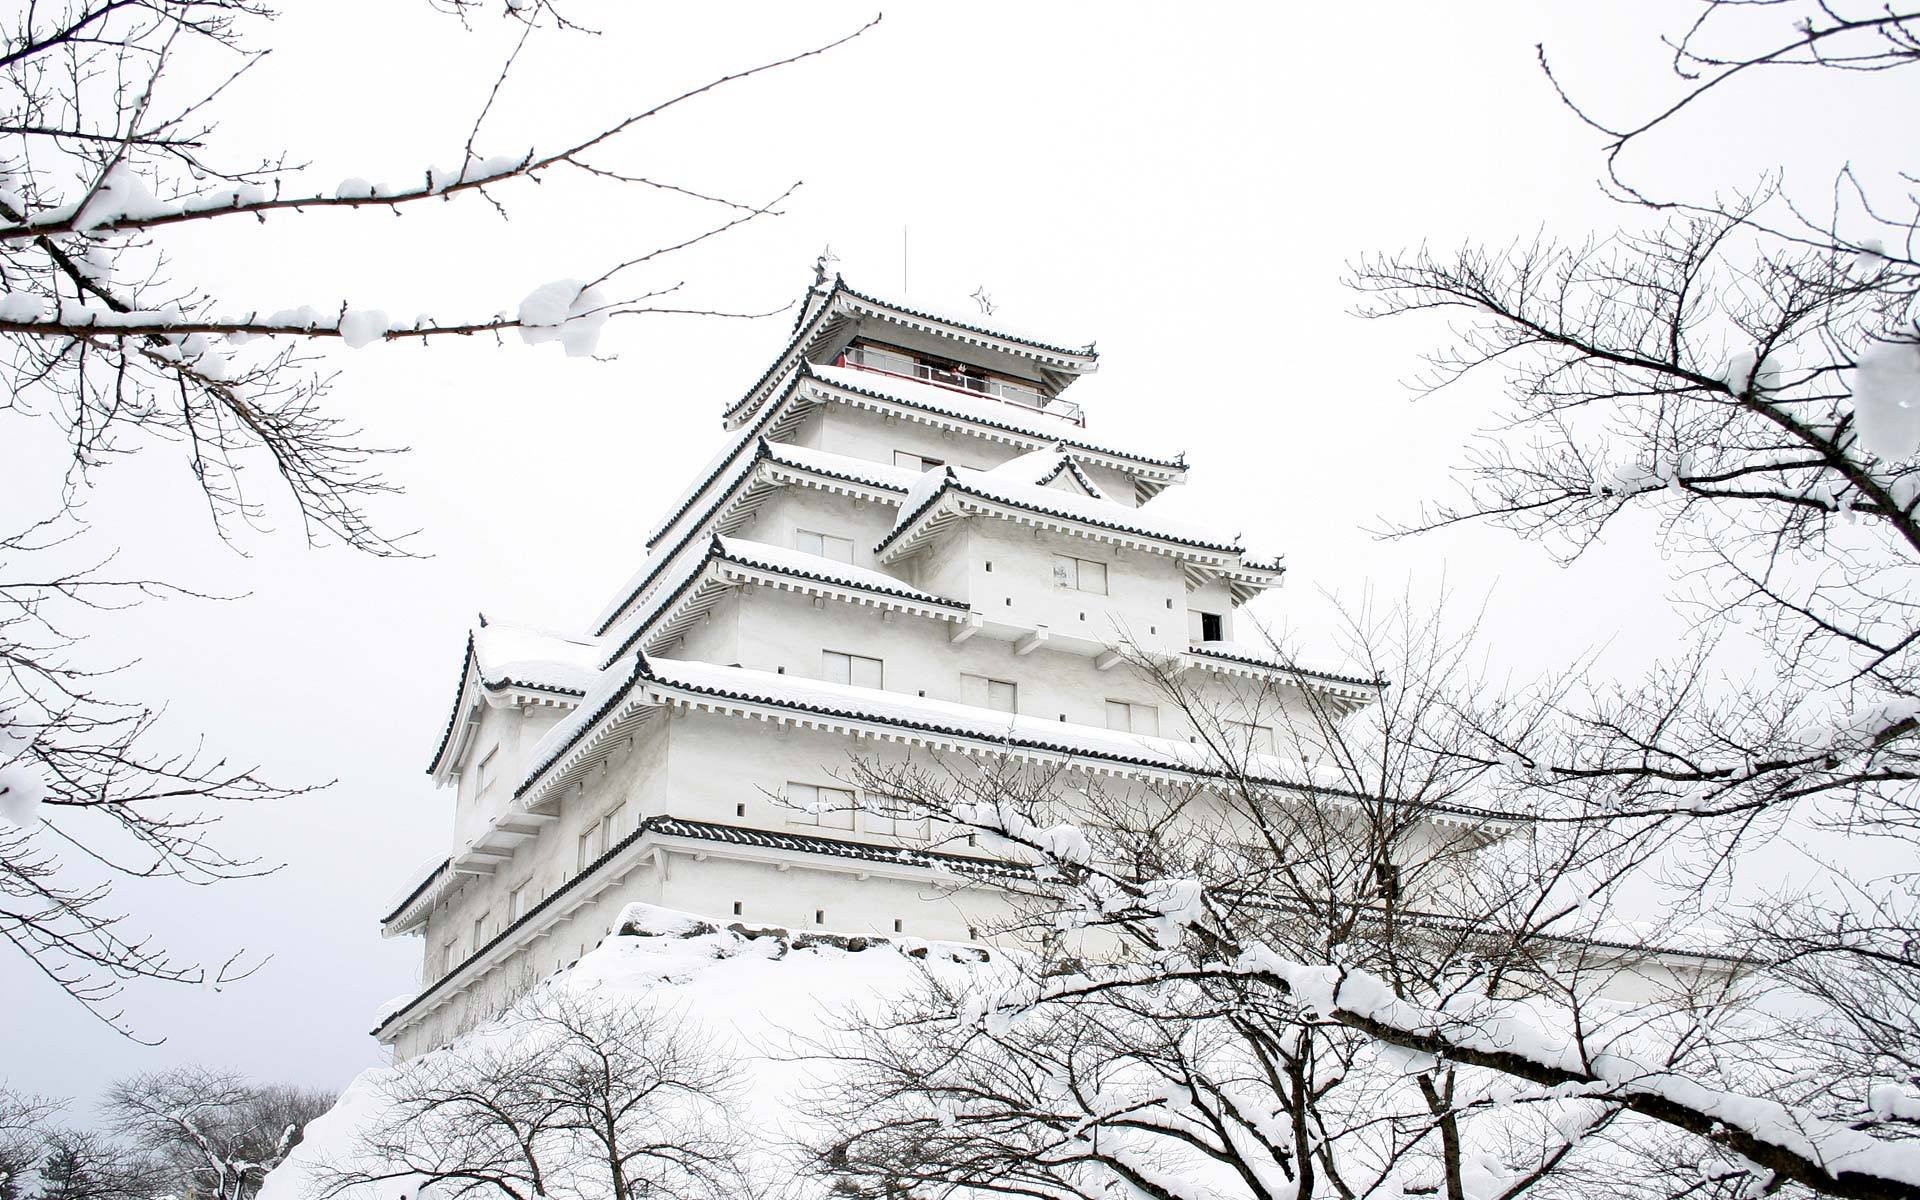 Заснеженный замок зимой в Японии Обои на рабочий стол.